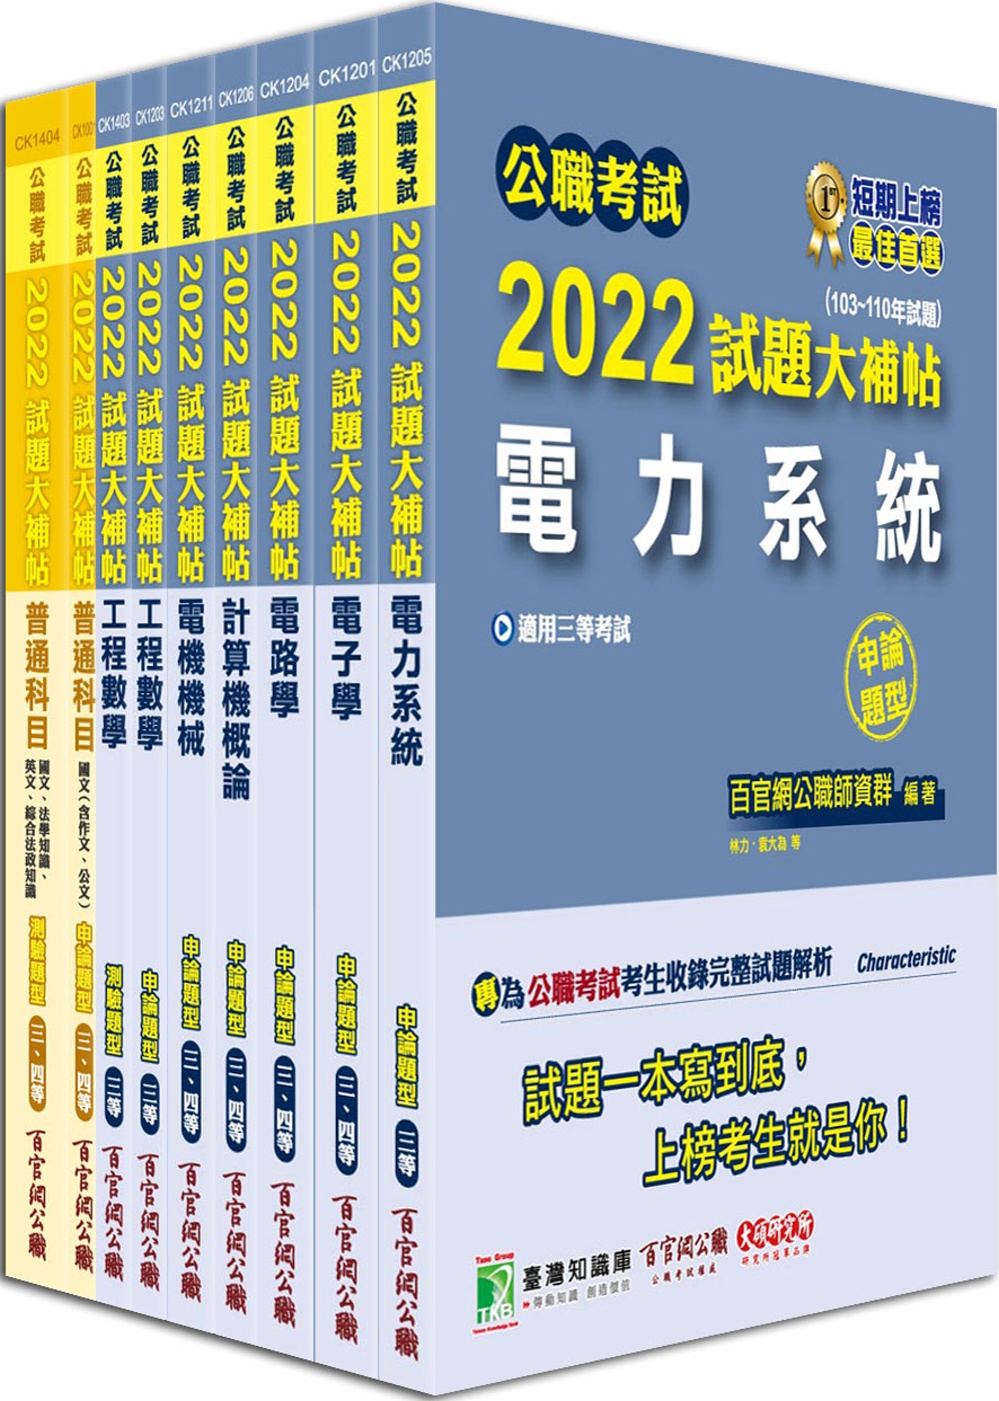 公職考試2022試題大補帖【高考三級 電力工程】套書[適用三等/高考、地方特考]